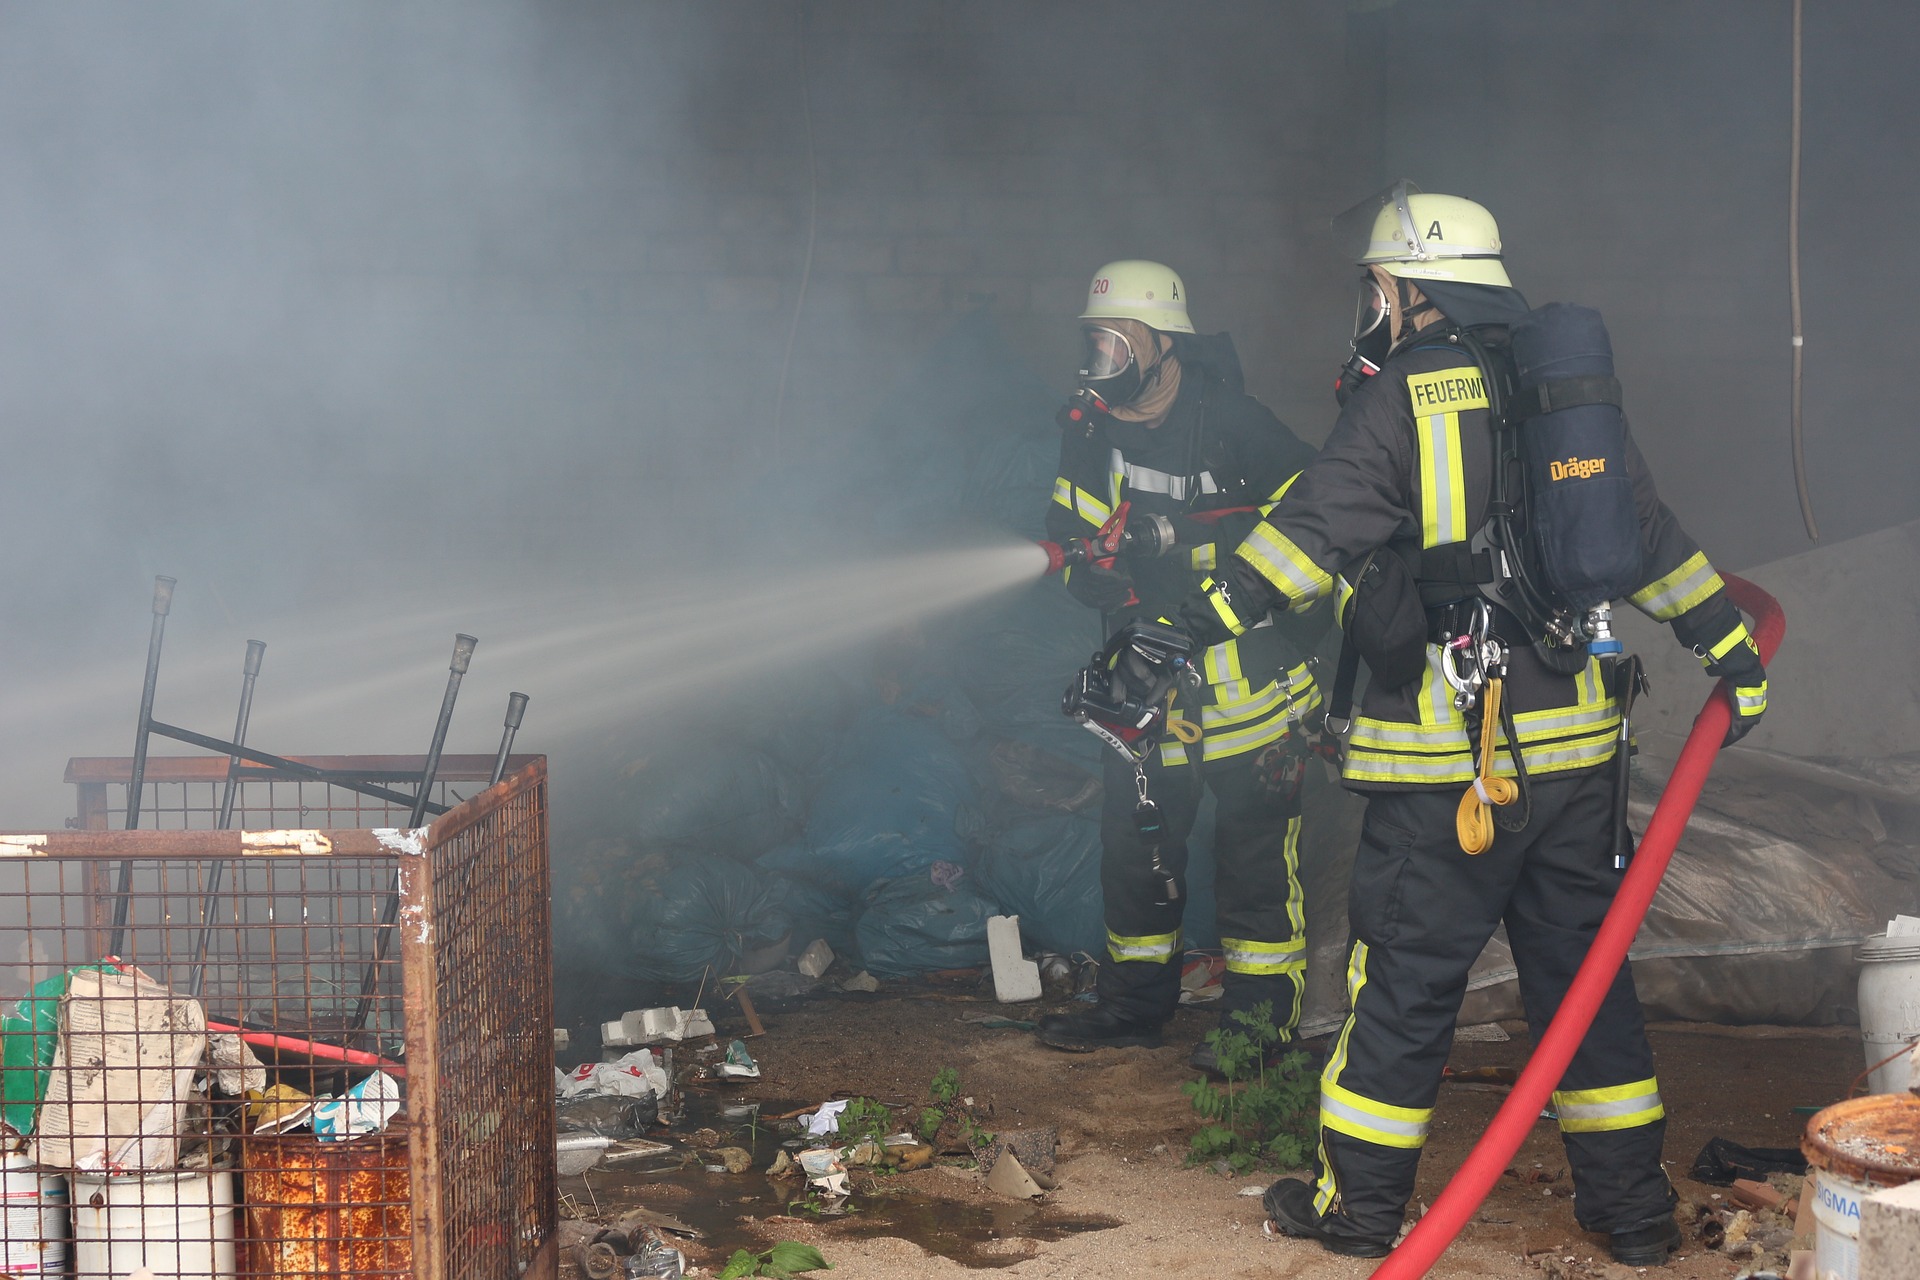 Troje dzieci i jeden mężczyzna zginęli w tragicznym pożarze w Choroszczy pod Białymstokiem